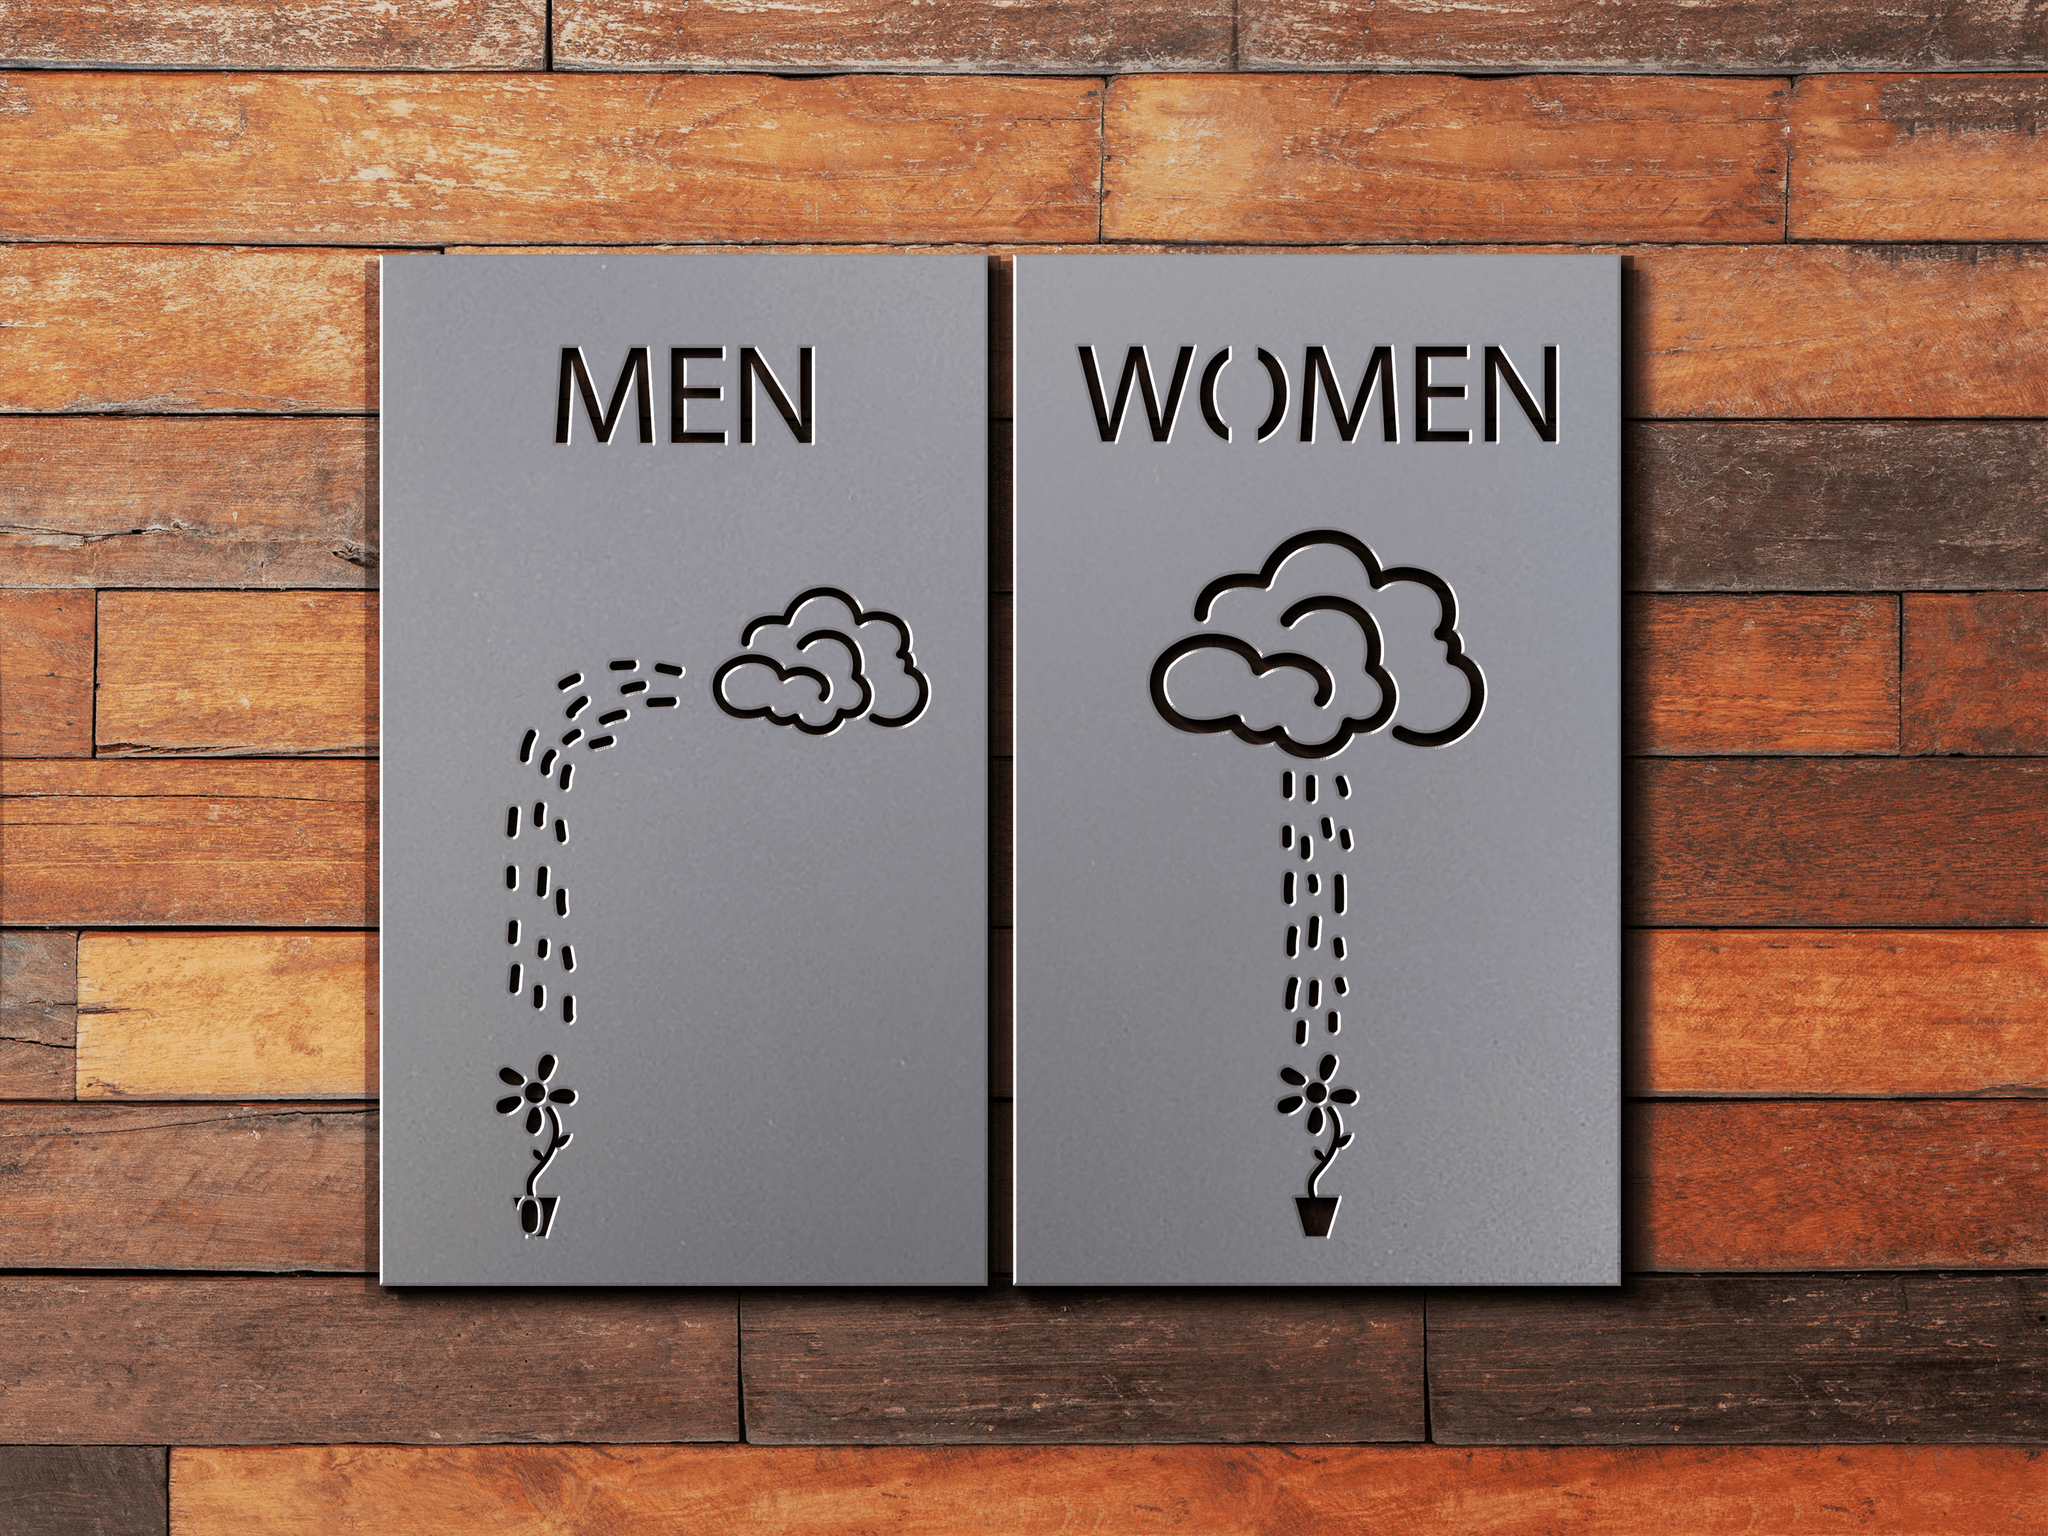 Mens Restroom Signs  Gentlemen Restroom Signs